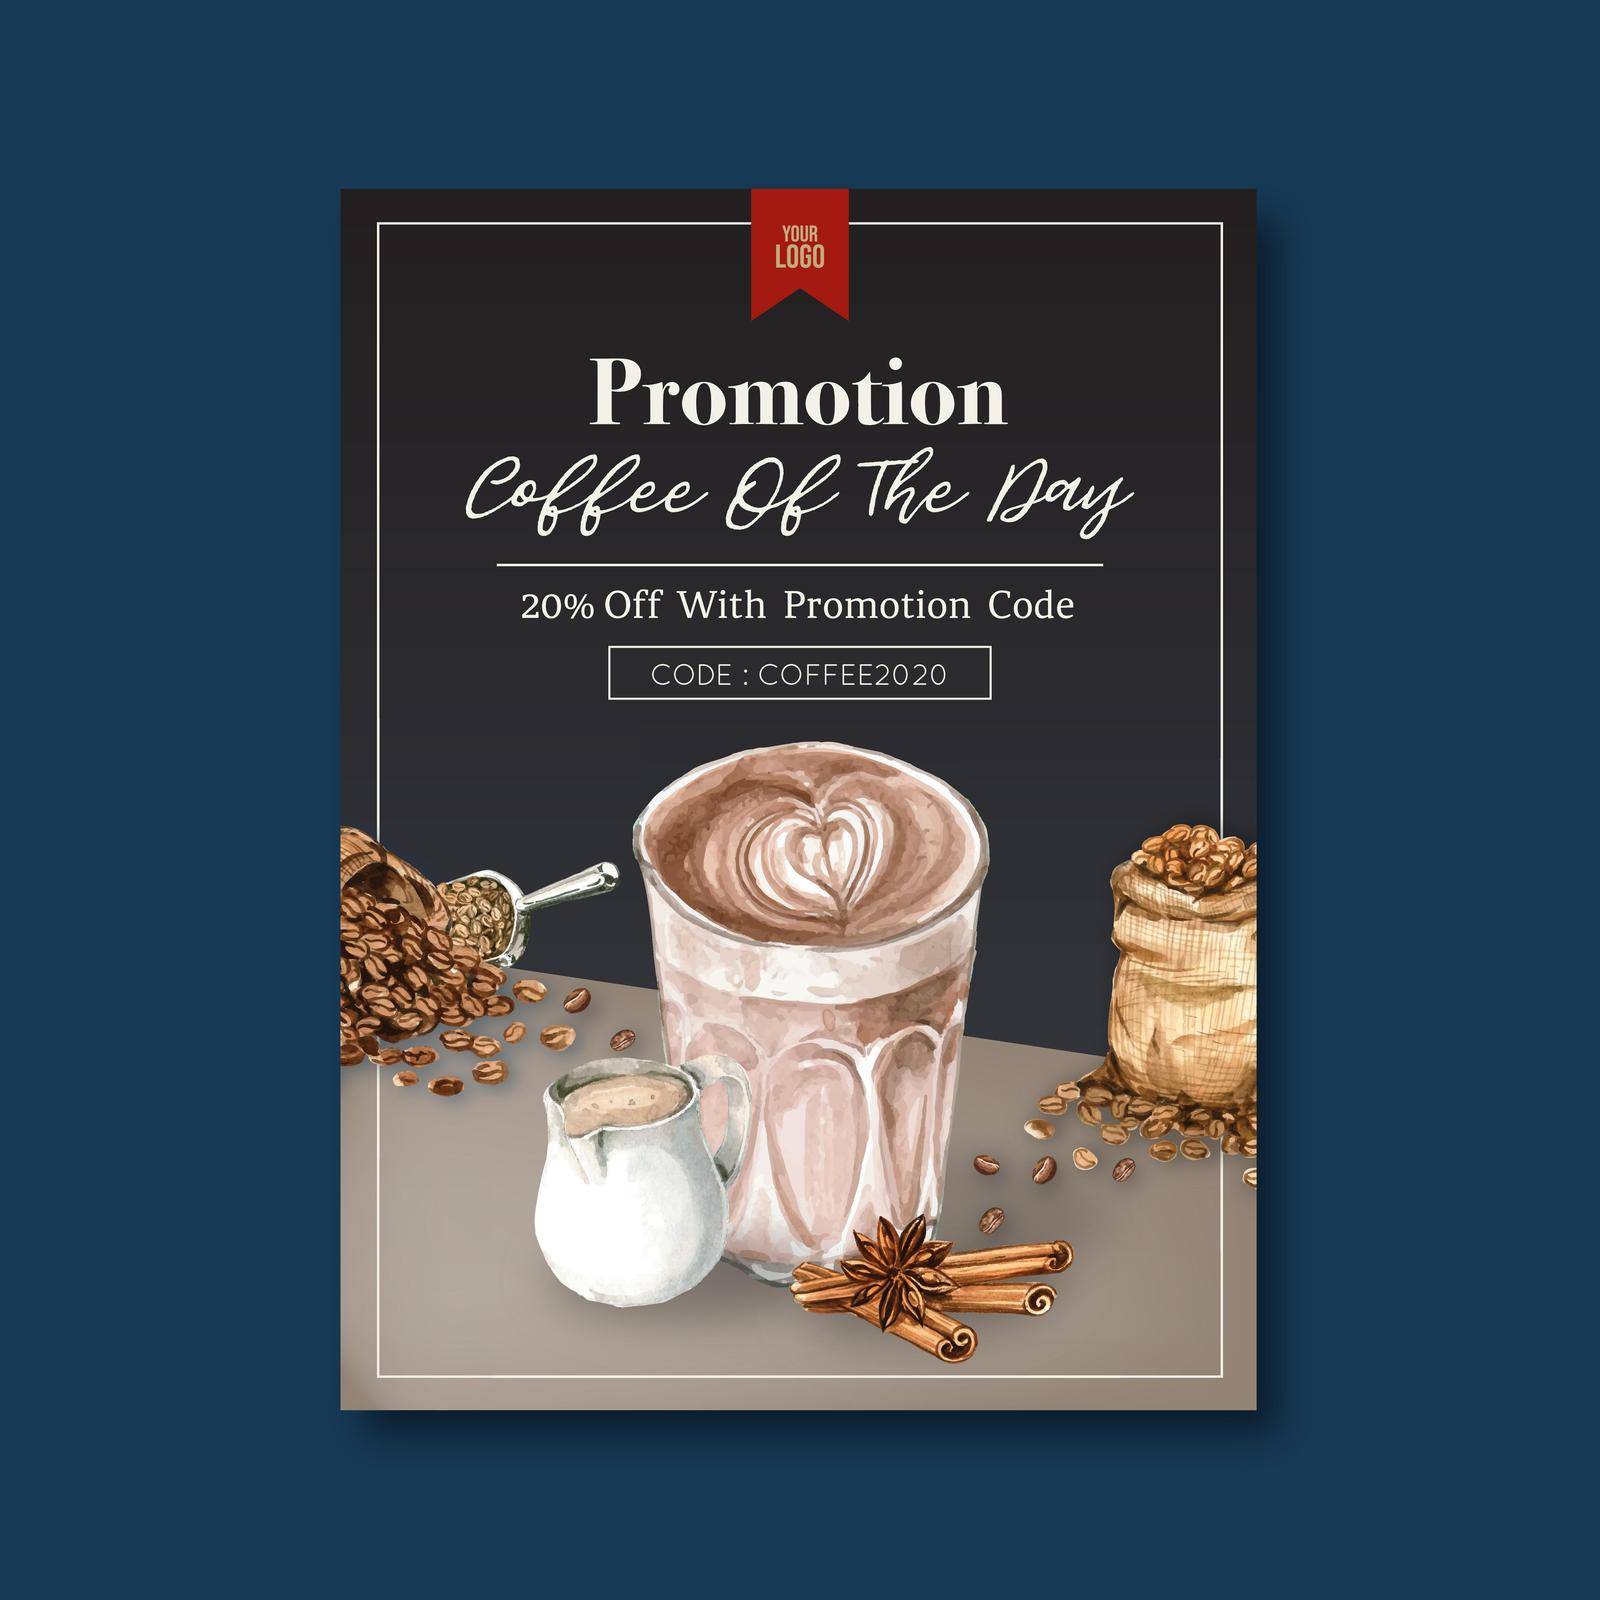 americano ,cappuccino, espresso coffee poster discount, template design, watercolor illustration by Photographeeasia